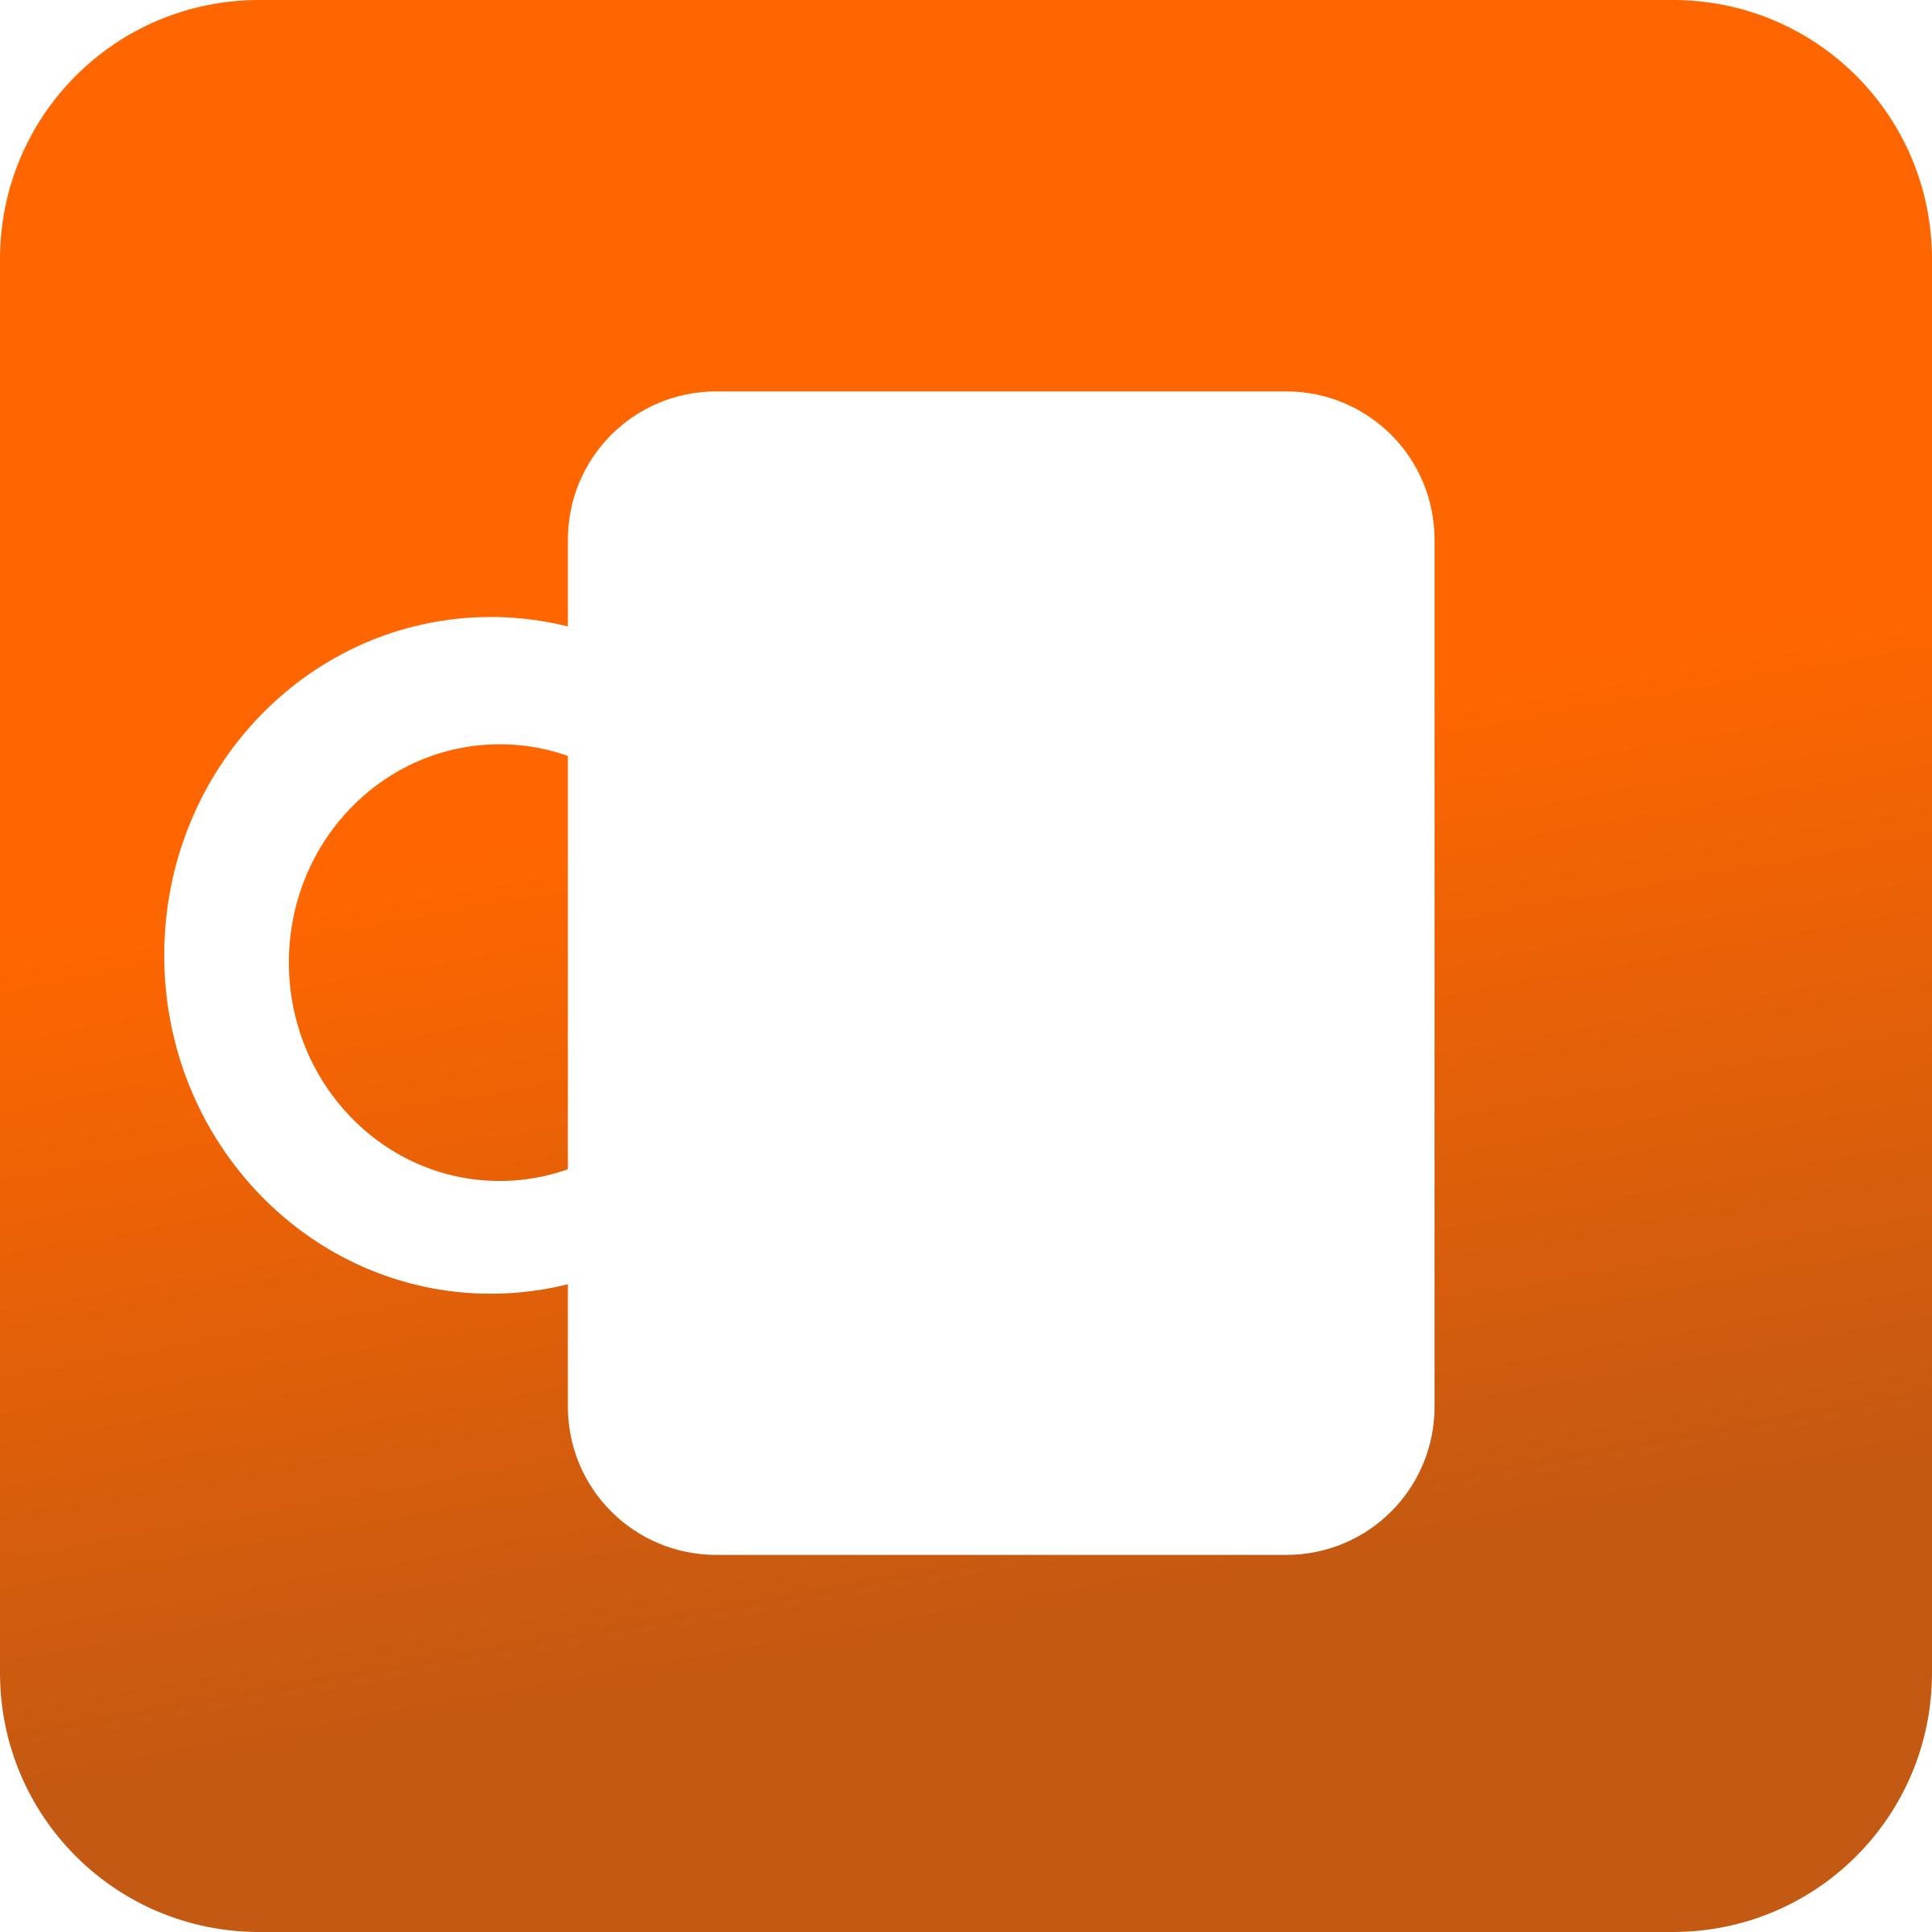 Coffee mug icon icons